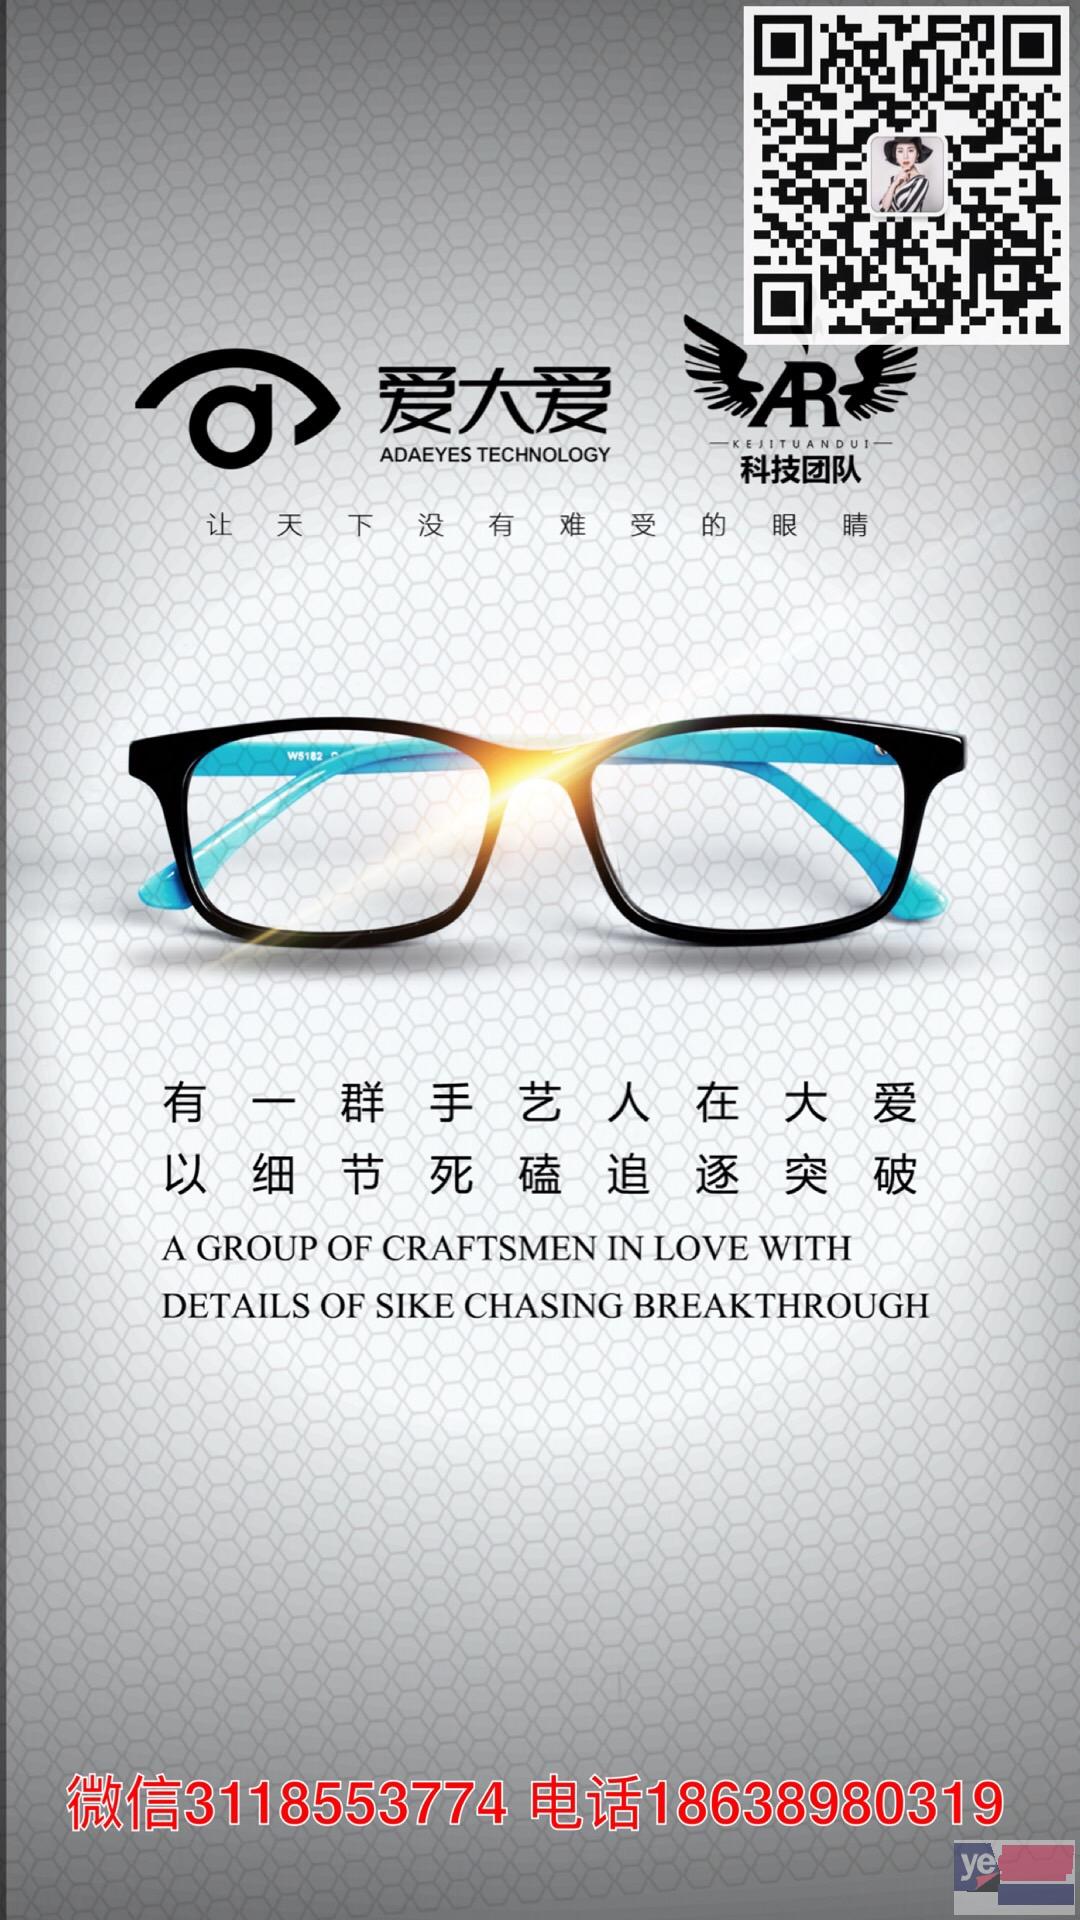 白城通榆县爱大爱手机眼镜有用吗北京哪里有卖的